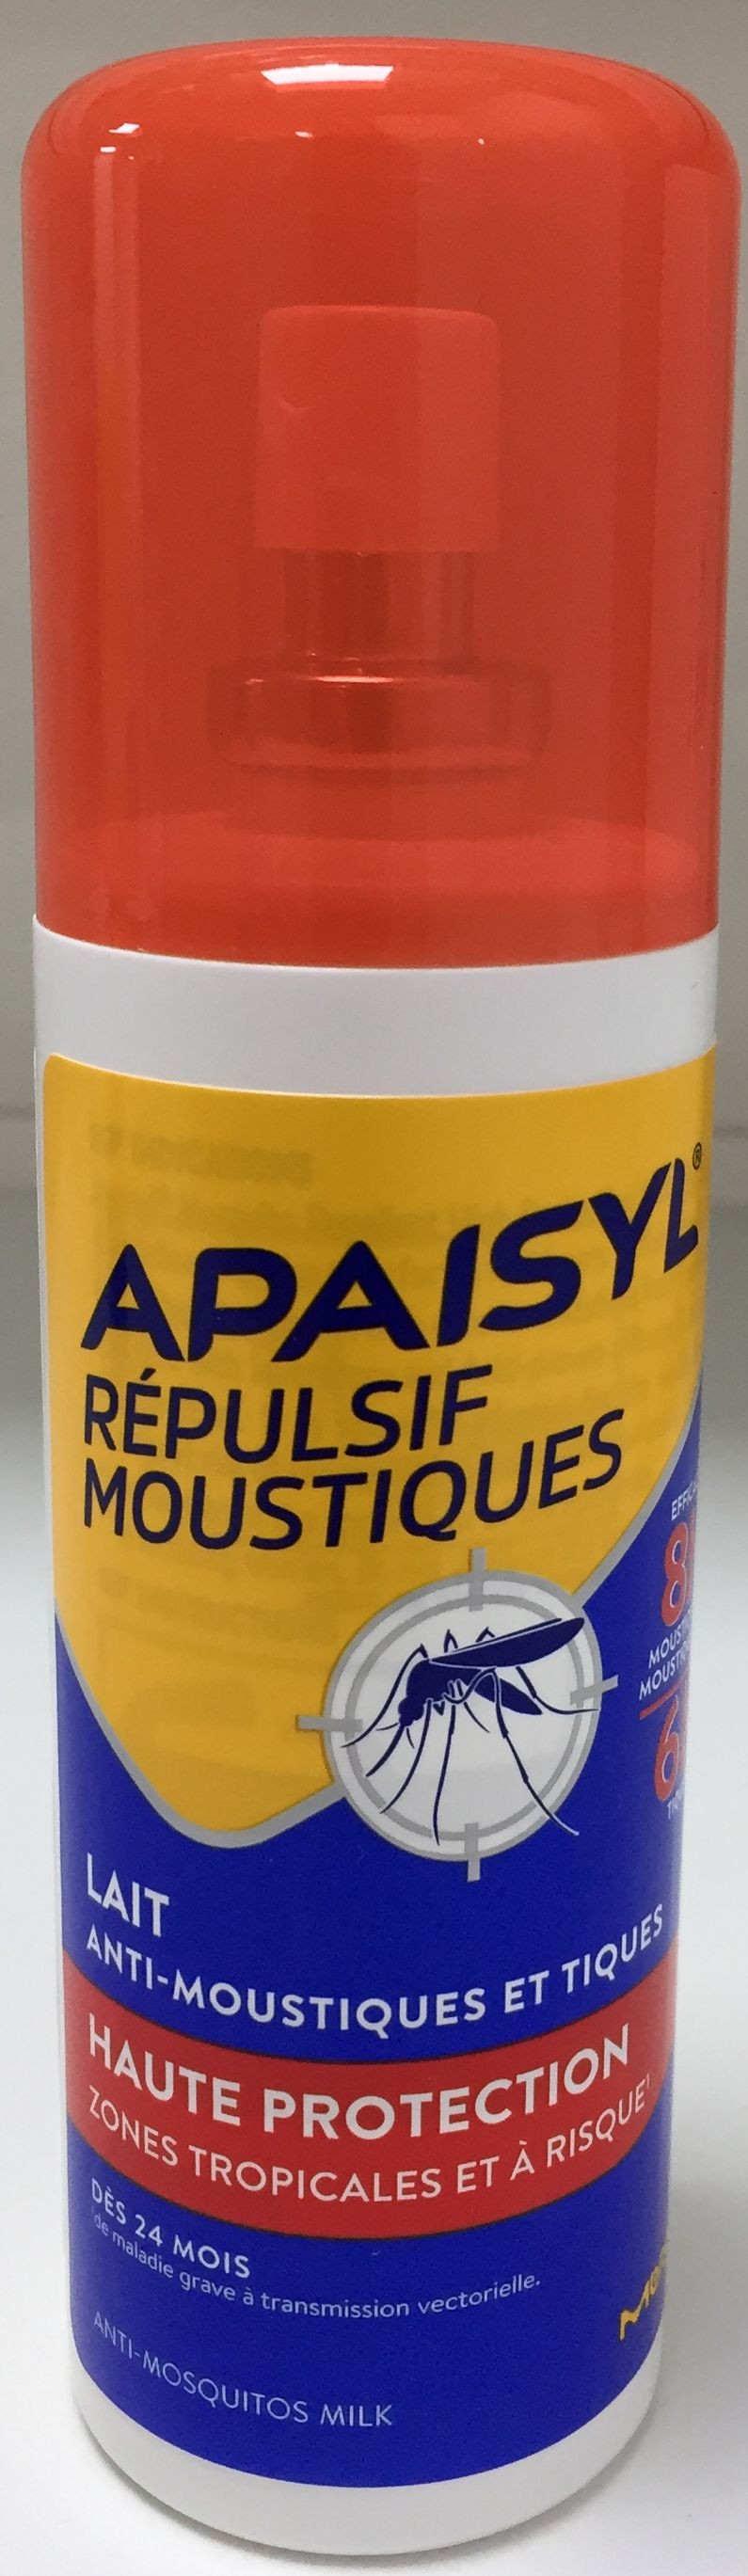 Répulsif cutané anti-moustiques zone tropicale professionnel Repeline